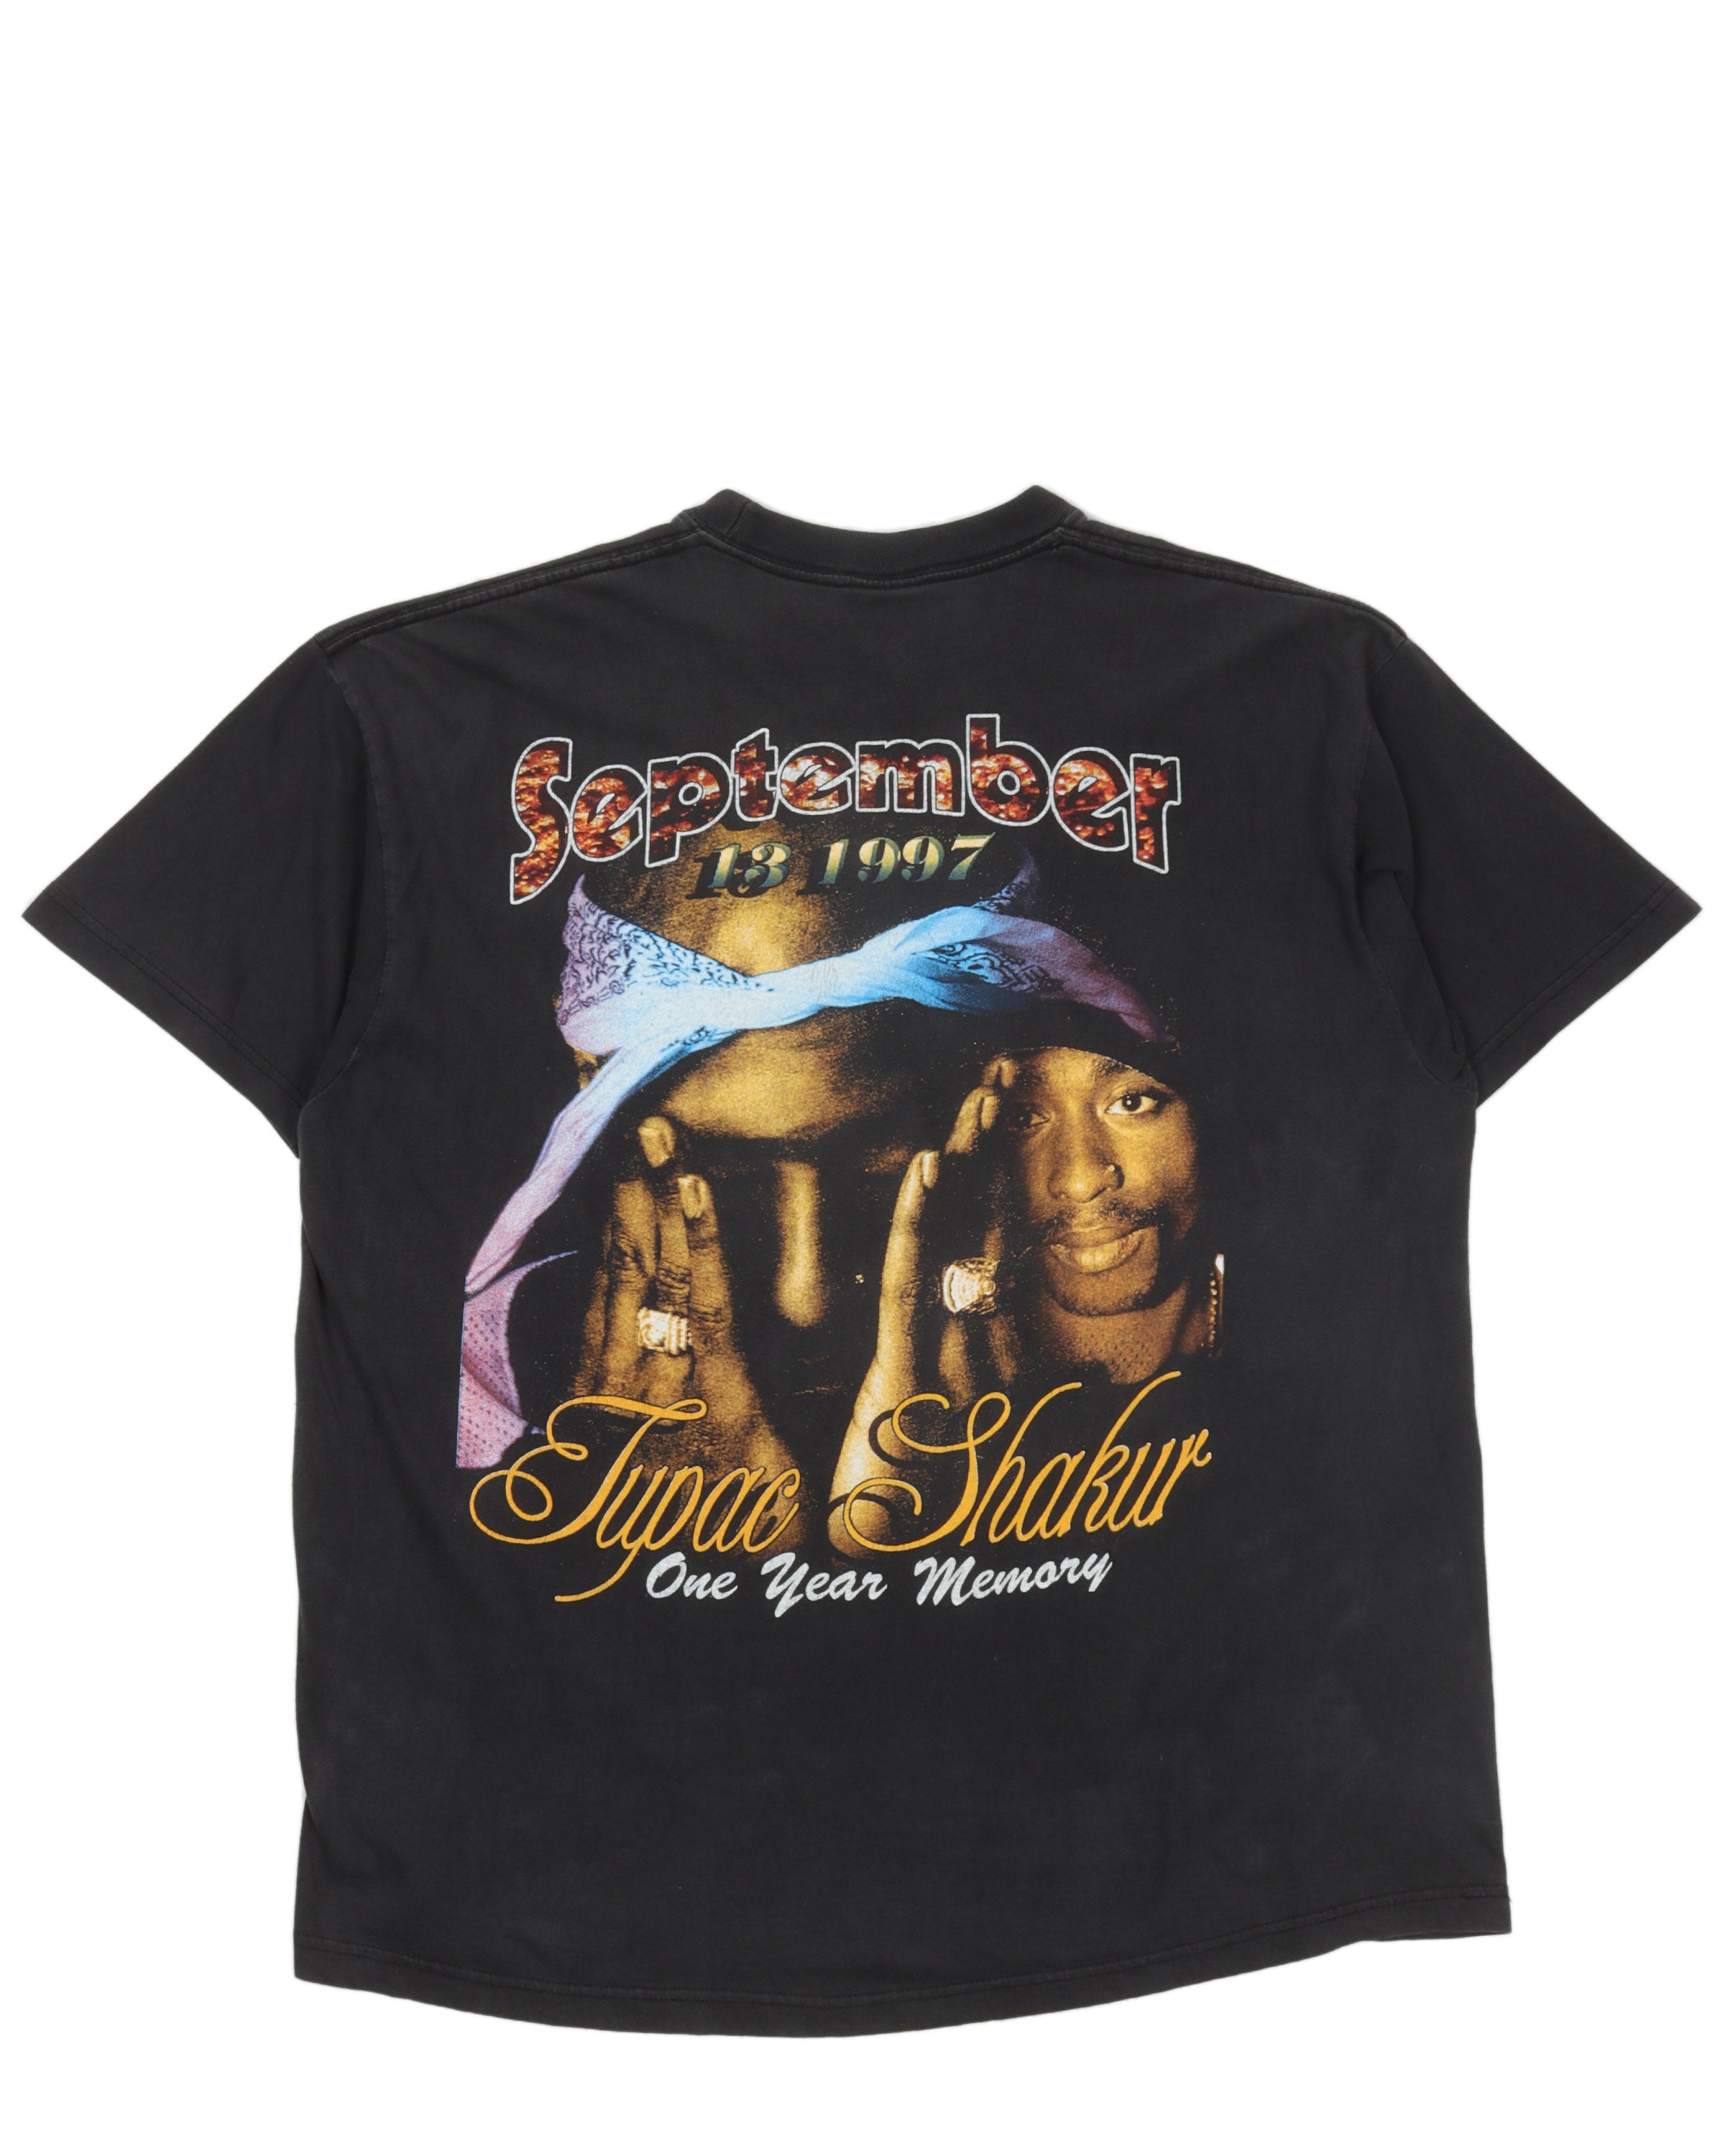 Tupac "Thug Life" T-Shirt